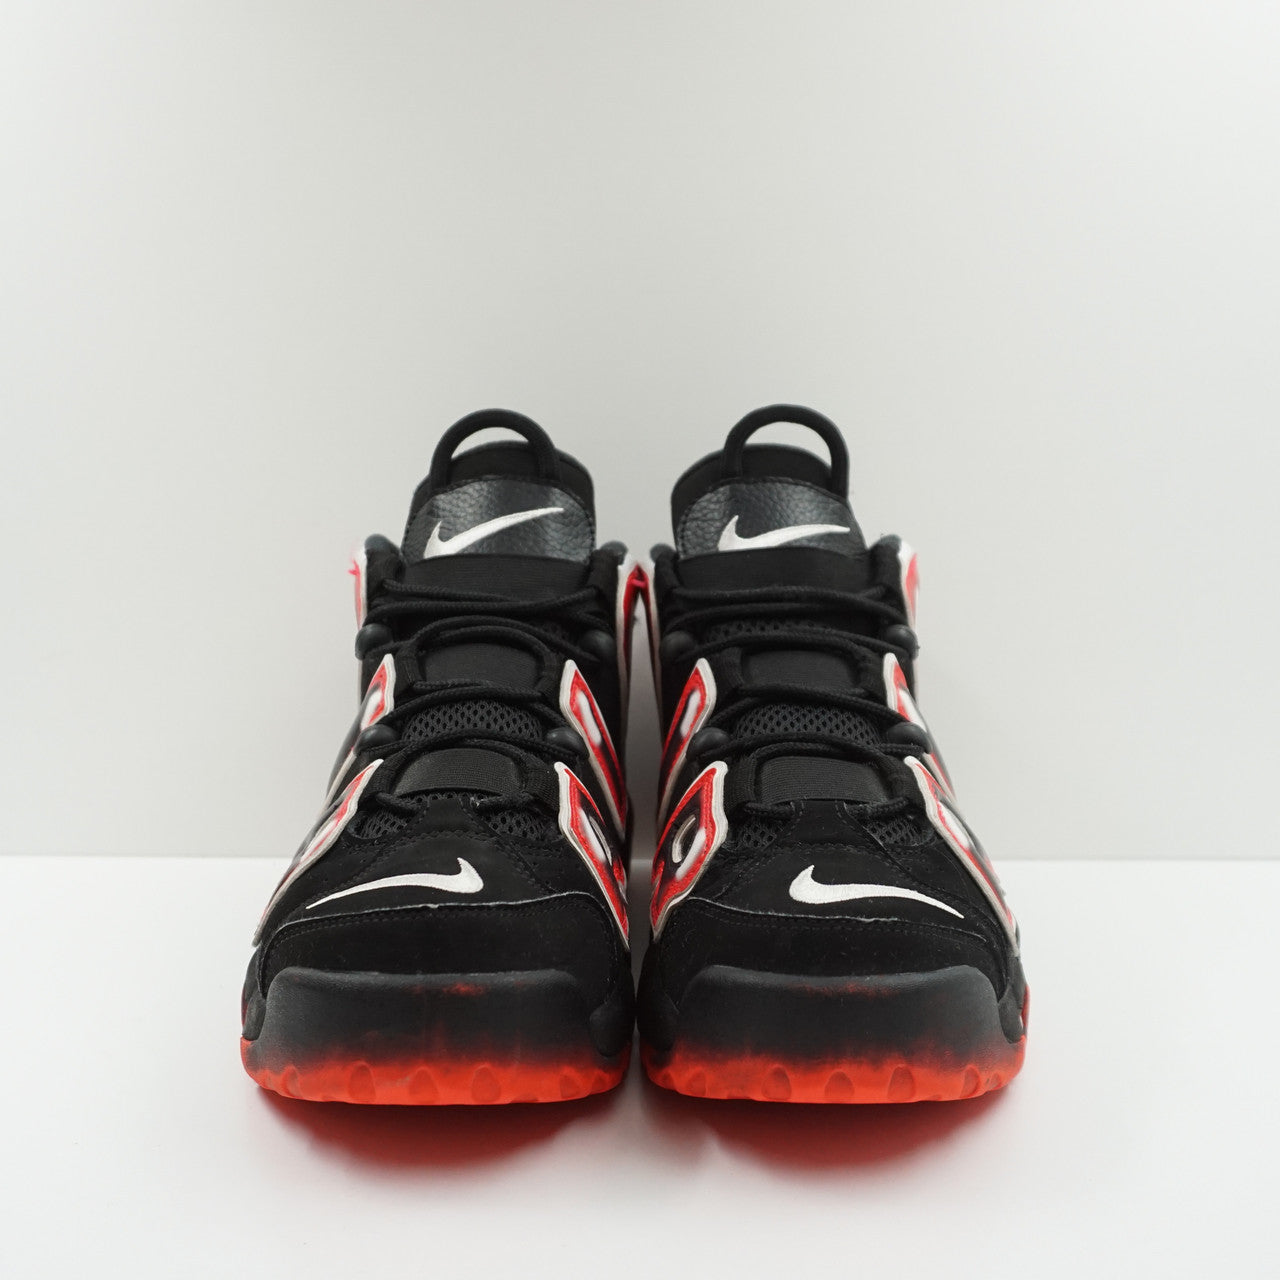 Nike Air More Uptempo Black White Laser Crimson